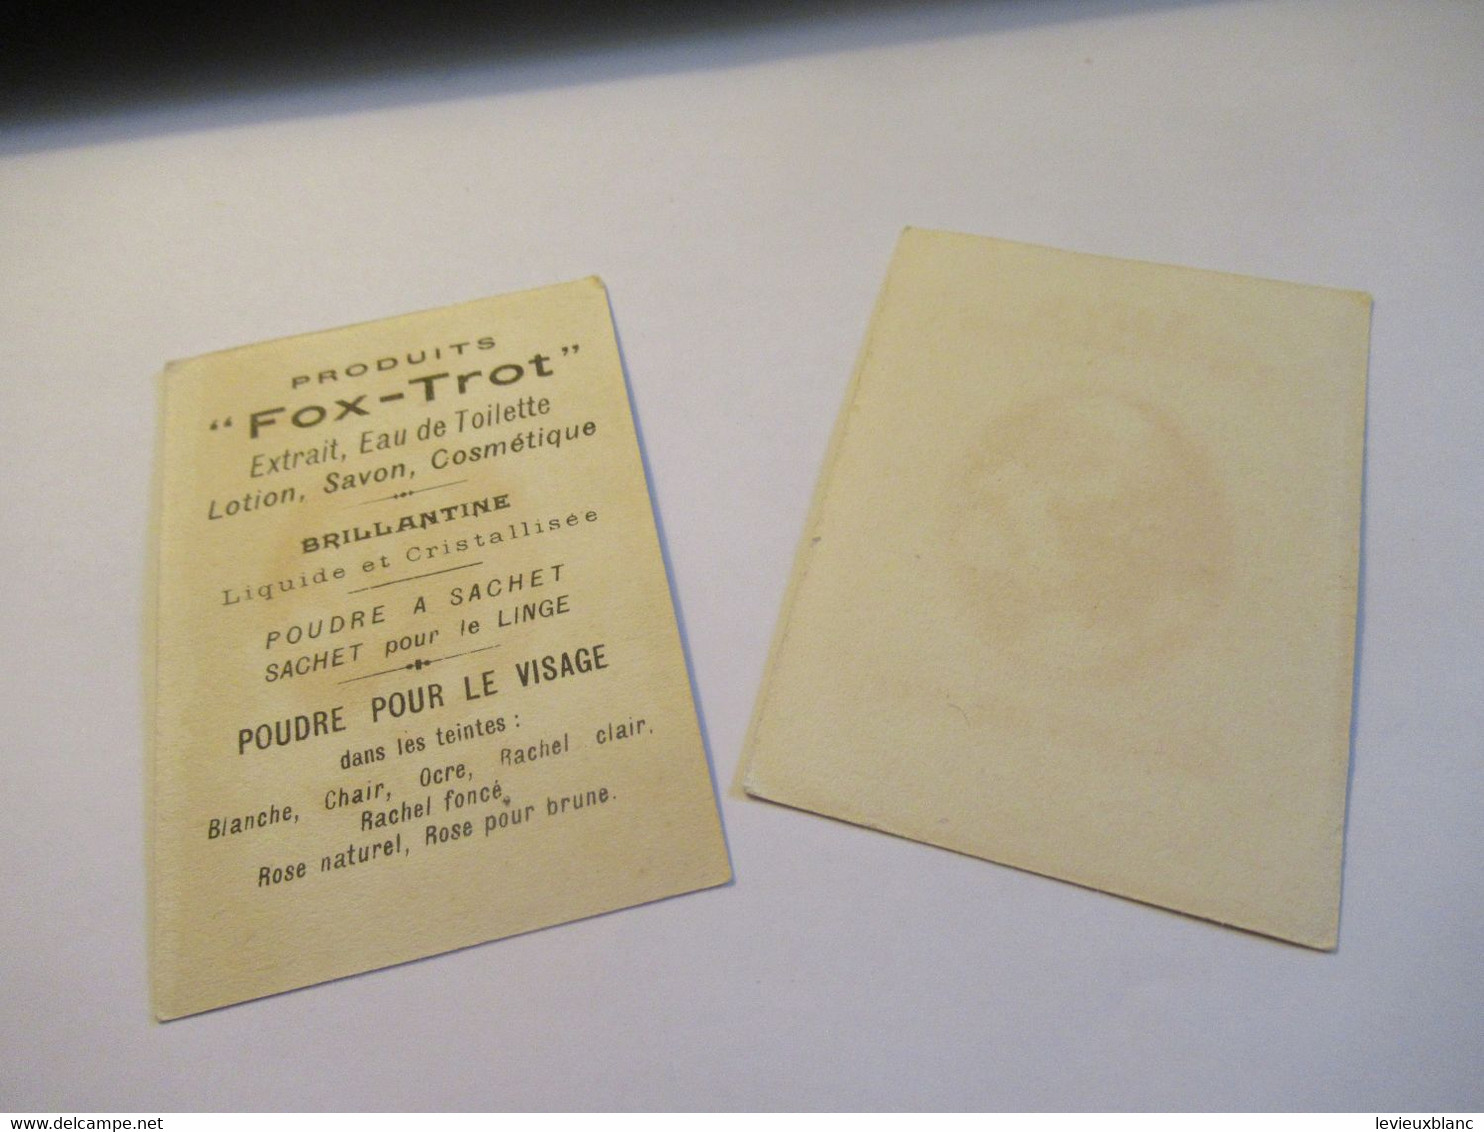 2 Petites Cartes Publicitaires Parfumées/ ARYS, 2 Rue De La Paix Paris/Fox-Trot/ Faisons Un Rêve/Vers 1920   PARF240 - Anciennes (jusque 1960)